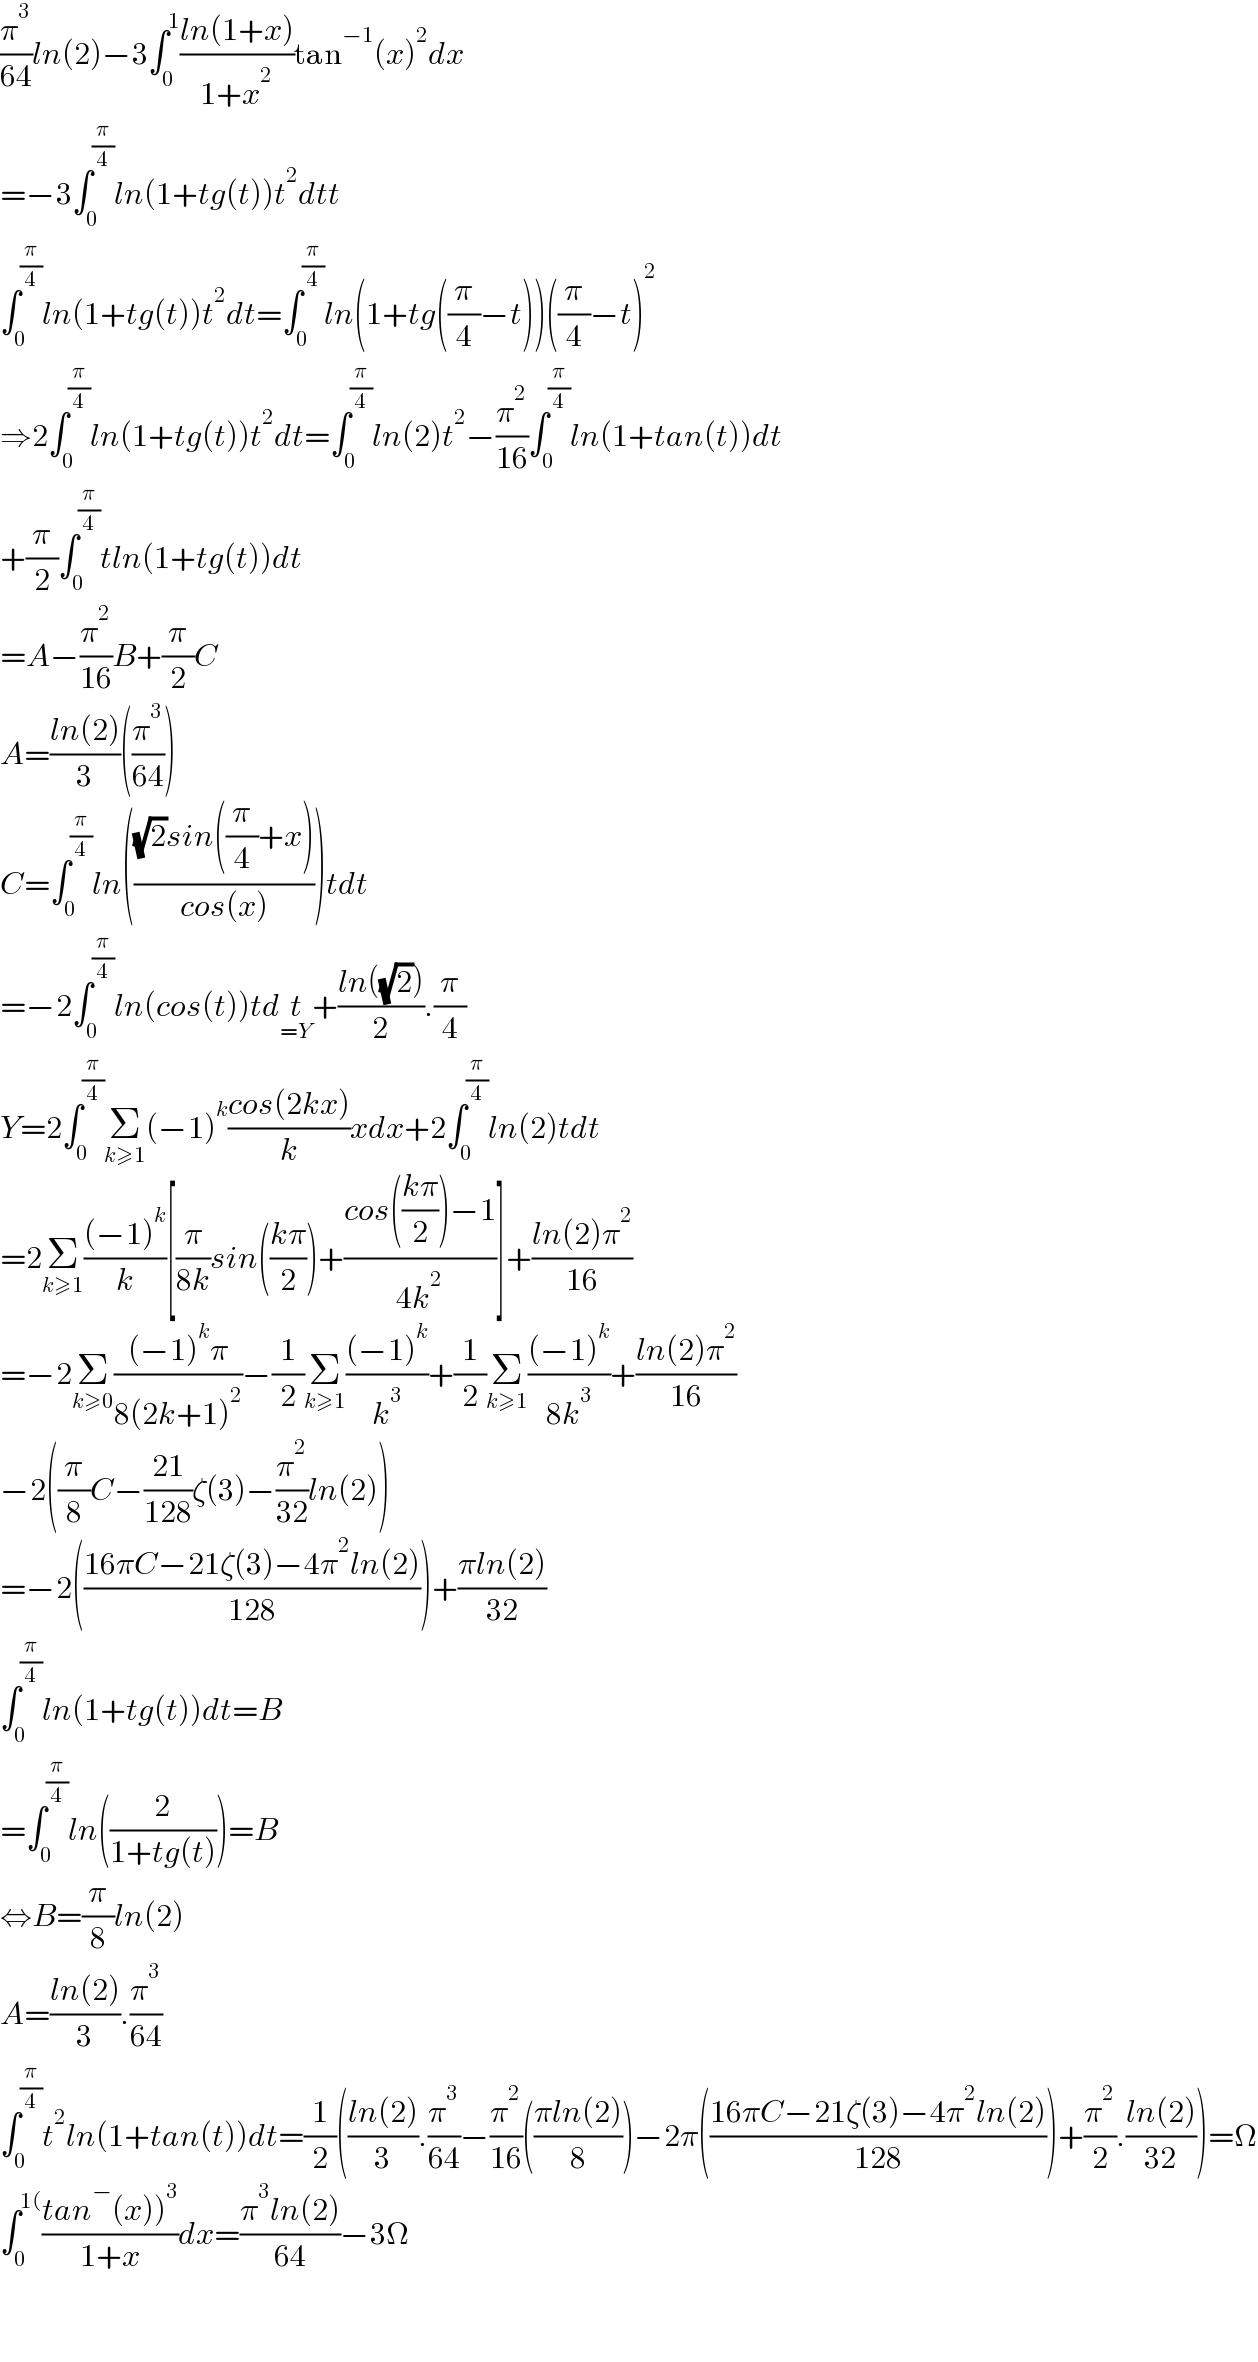 (π^3 /(64))ln(2)−3∫_0 ^1 ((ln(1+x))/(1+x^2 ))tan^(−1) (x)^2 dx  =−3∫_0 ^(π/4) ln(1+tg(t))t^2 dtt  ∫_0 ^(π/4) ln(1+tg(t))t^2 dt=∫_0 ^(π/4) ln(1+tg((π/4)−t))((π/4)−t)^2   ⇒2∫_0 ^(π/4) ln(1+tg(t))t^2 dt=∫_0 ^(π/4) ln(2)t^2 −(π^2 /(16))∫_0 ^(π/4) ln(1+tan(t))dt  +(π/2)∫_0 ^(π/4) tln(1+tg(t))dt  =A−(π^2 /(16))B+(π/2)C  A=((ln(2))/3)((π^3 /(64)))  C=∫_0 ^(π/4) ln((((√2)sin((π/4)+x))/(cos(x))))tdt  =−2∫_0 ^(π/4) ln(cos(t))tdt_(=Y) +((ln((√2)))/2).(π/4)  Y=2∫_0 ^(π/4) Σ_(k≥1) (−1)^k ((cos(2kx))/k)xdx+2∫_0 ^(π/4) ln(2)tdt  =2Σ_(k≥1) (((−1)^k )/k)[(π/(8k))sin(((kπ)/2))+((cos(((kπ)/2))−1)/(4k^2 ))]+((ln(2)π^2 )/(16))  =−2Σ_(k≥0) (((−1)^k π)/(8(2k+1)^2 ))−(1/2)Σ_(k≥1) (((−1)^k )/k^3 )+(1/2)Σ_(k≥1) (((−1)^k )/(8k^3 ))+((ln(2)π^2 )/(16))  −2((π/8)C−((21)/(128))ζ(3)−(π^2 /(32))ln(2))  =−2(((16πC−21ζ(3)−4π^2 ln(2))/(128)))+((πln(2))/(32))  ∫_0 ^(π/4) ln(1+tg(t))dt=B  =∫_0 ^(π/4) ln((2/(1+tg(t))))=B  ⇔B=(π/8)ln(2)  A=((ln(2))/3).(π^3 /(64))  ∫_0 ^(π/4) t^2 ln(1+tan(t))dt=(1/2)(((ln(2))/3).(π^3 /(64))−(π^2 /(16))(((πln(2))/8))−2π(((16πC−21ζ(3)−4π^2 ln(2))/(128)))+(π^2 /2).((ln(2))/(32)))=Ω  ∫_0 ^(1() ((tan^− (x))^3 )/(1+x))dx=((π^3 ln(2))/(64))−3Ω      